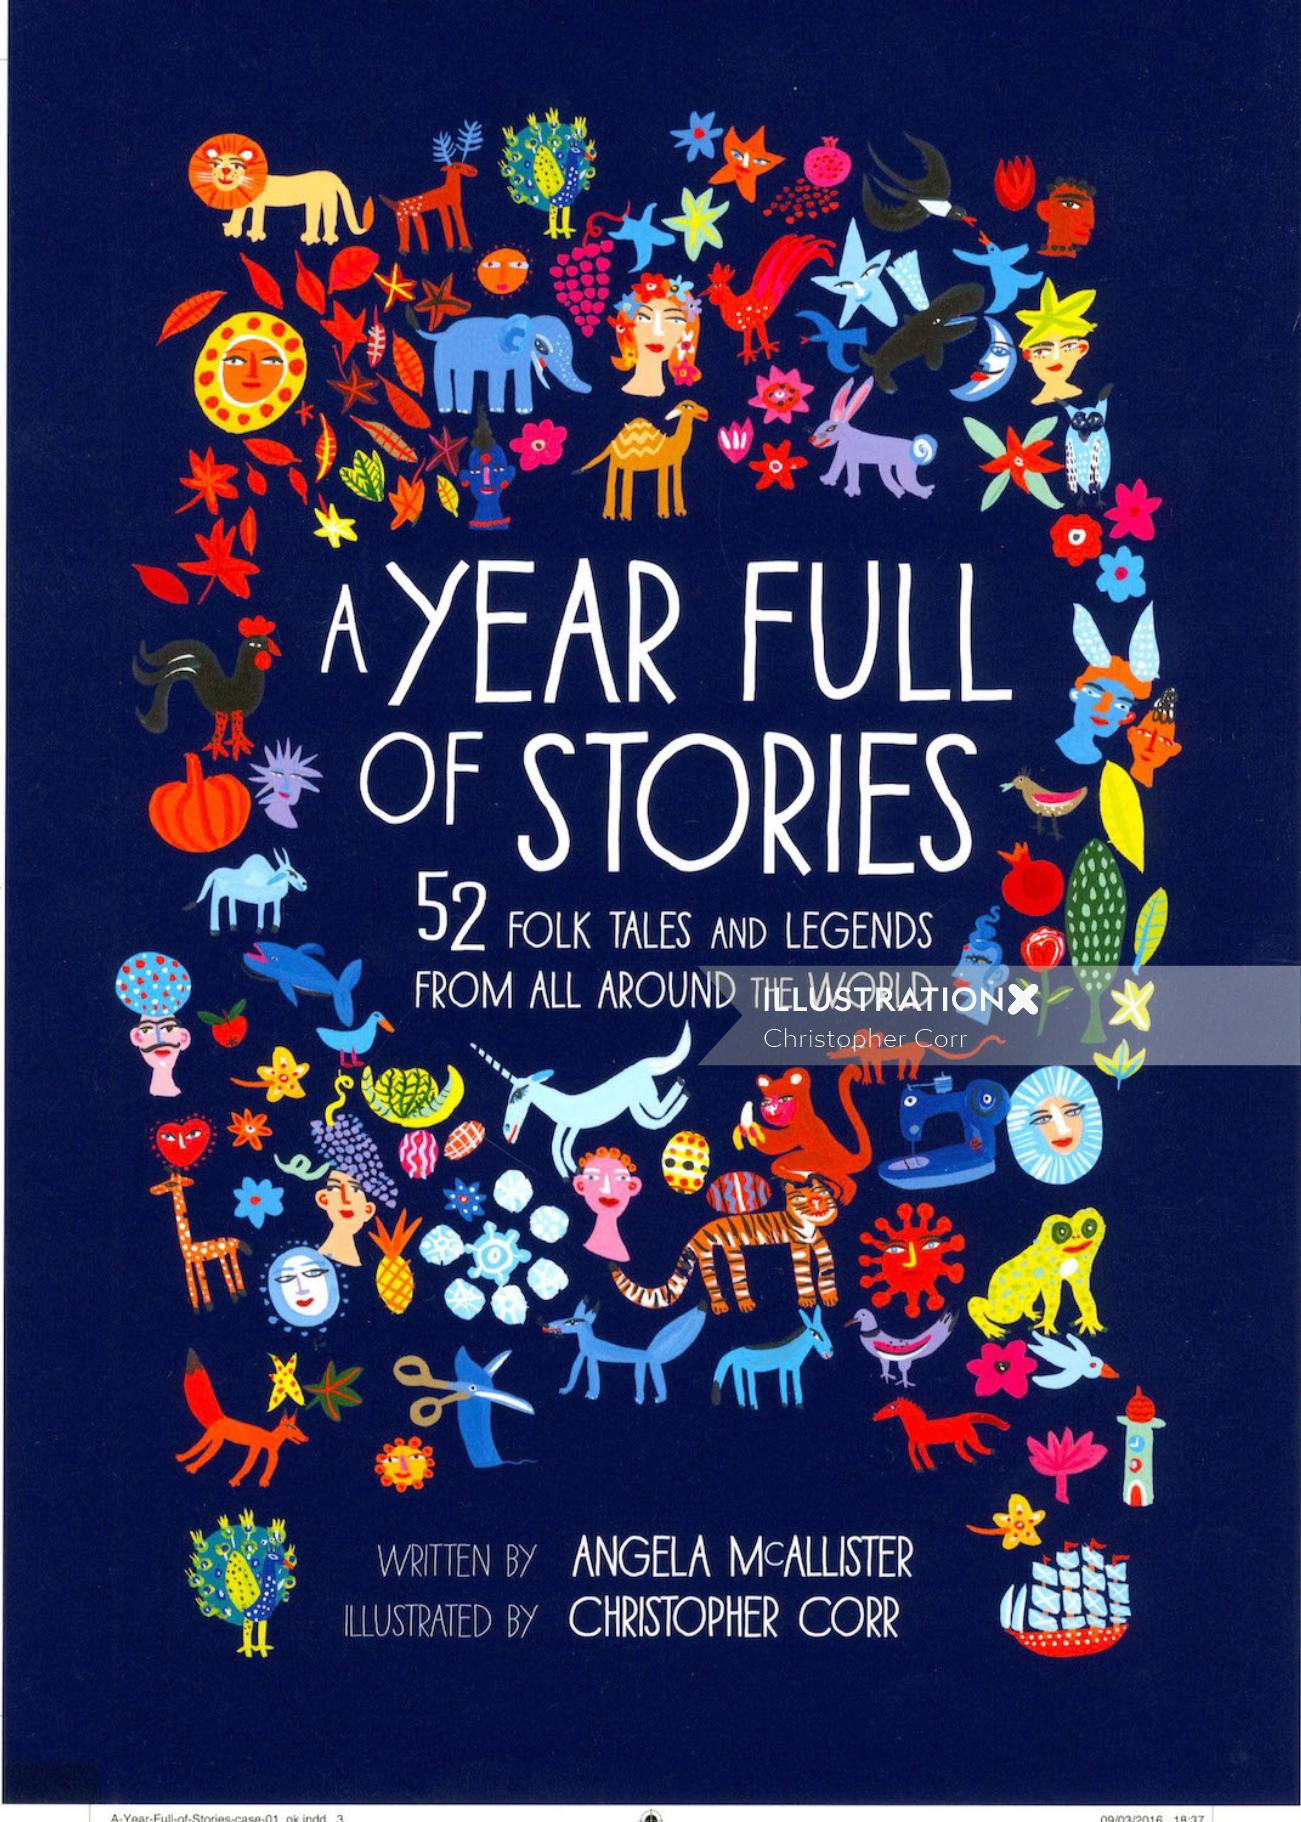 アンジェラ・マカリスター著『A Year Full of Stories』の表紙イラスト